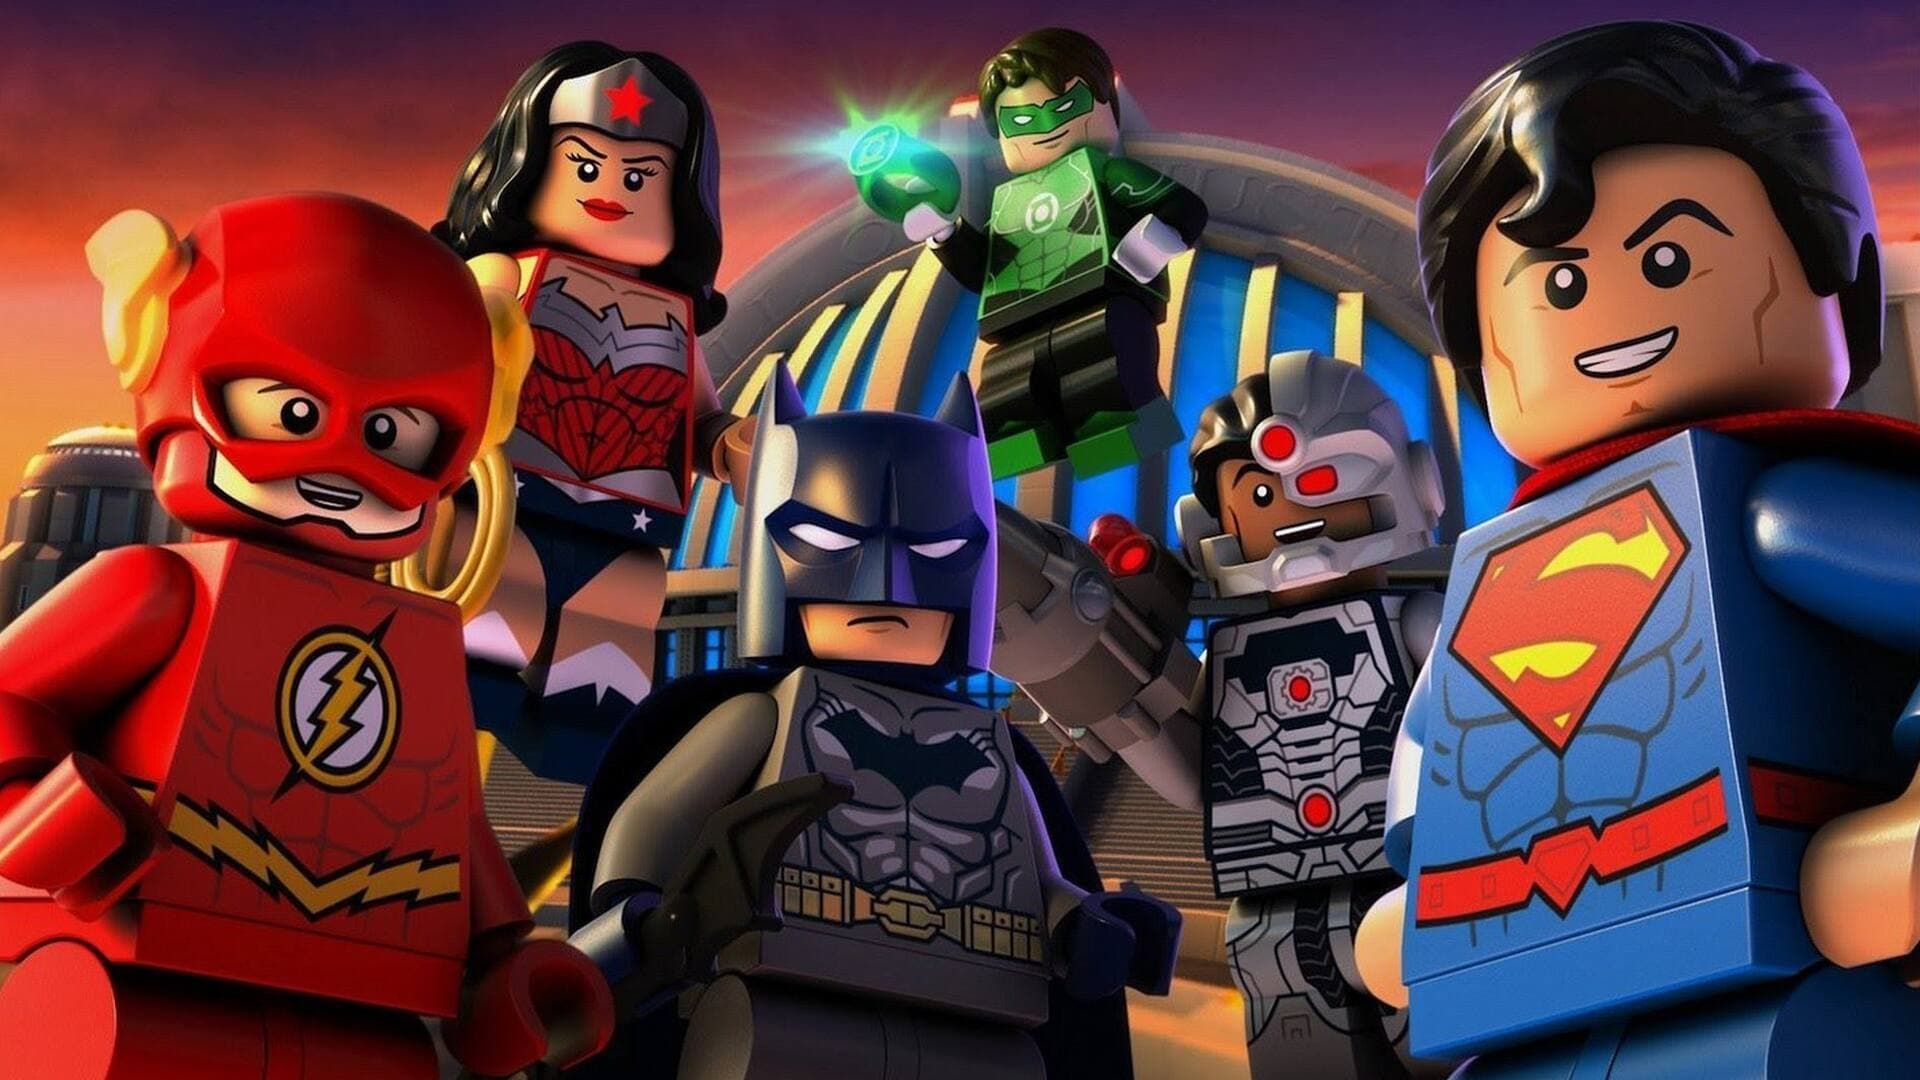 Lego DC Comics Super Heroes - Justice League - Cosmic Clash (2016)